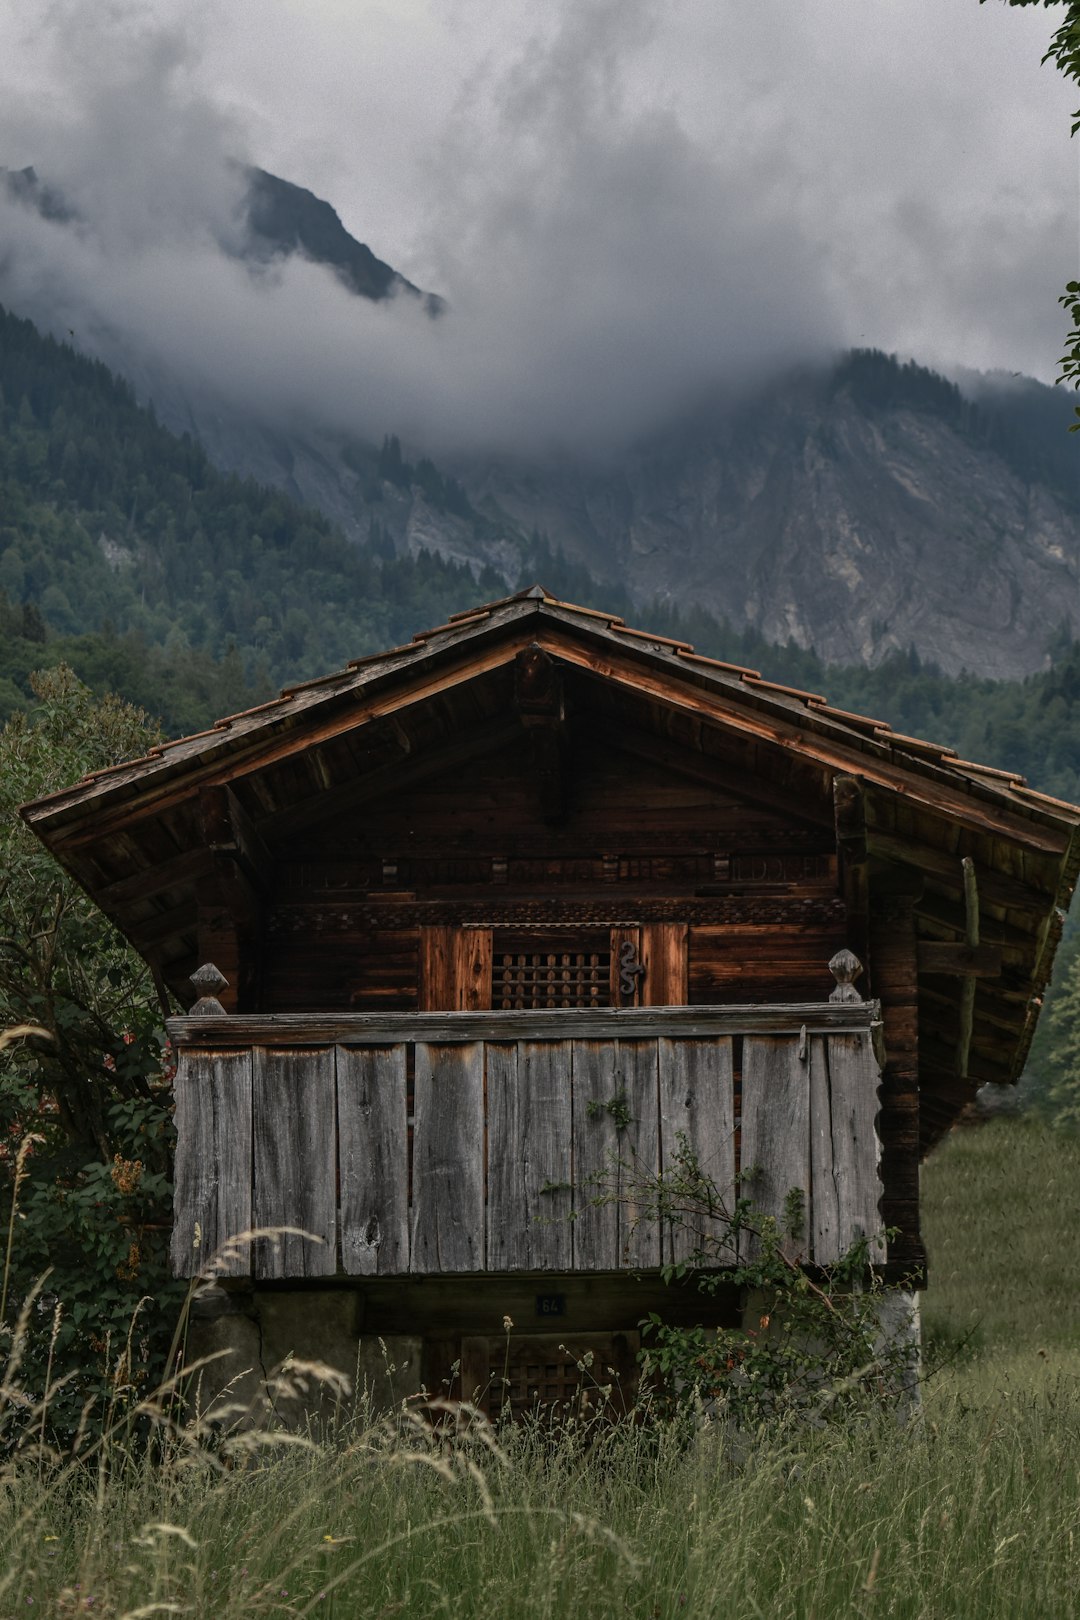 Log cabin photo spot Grindelwald Switzerland